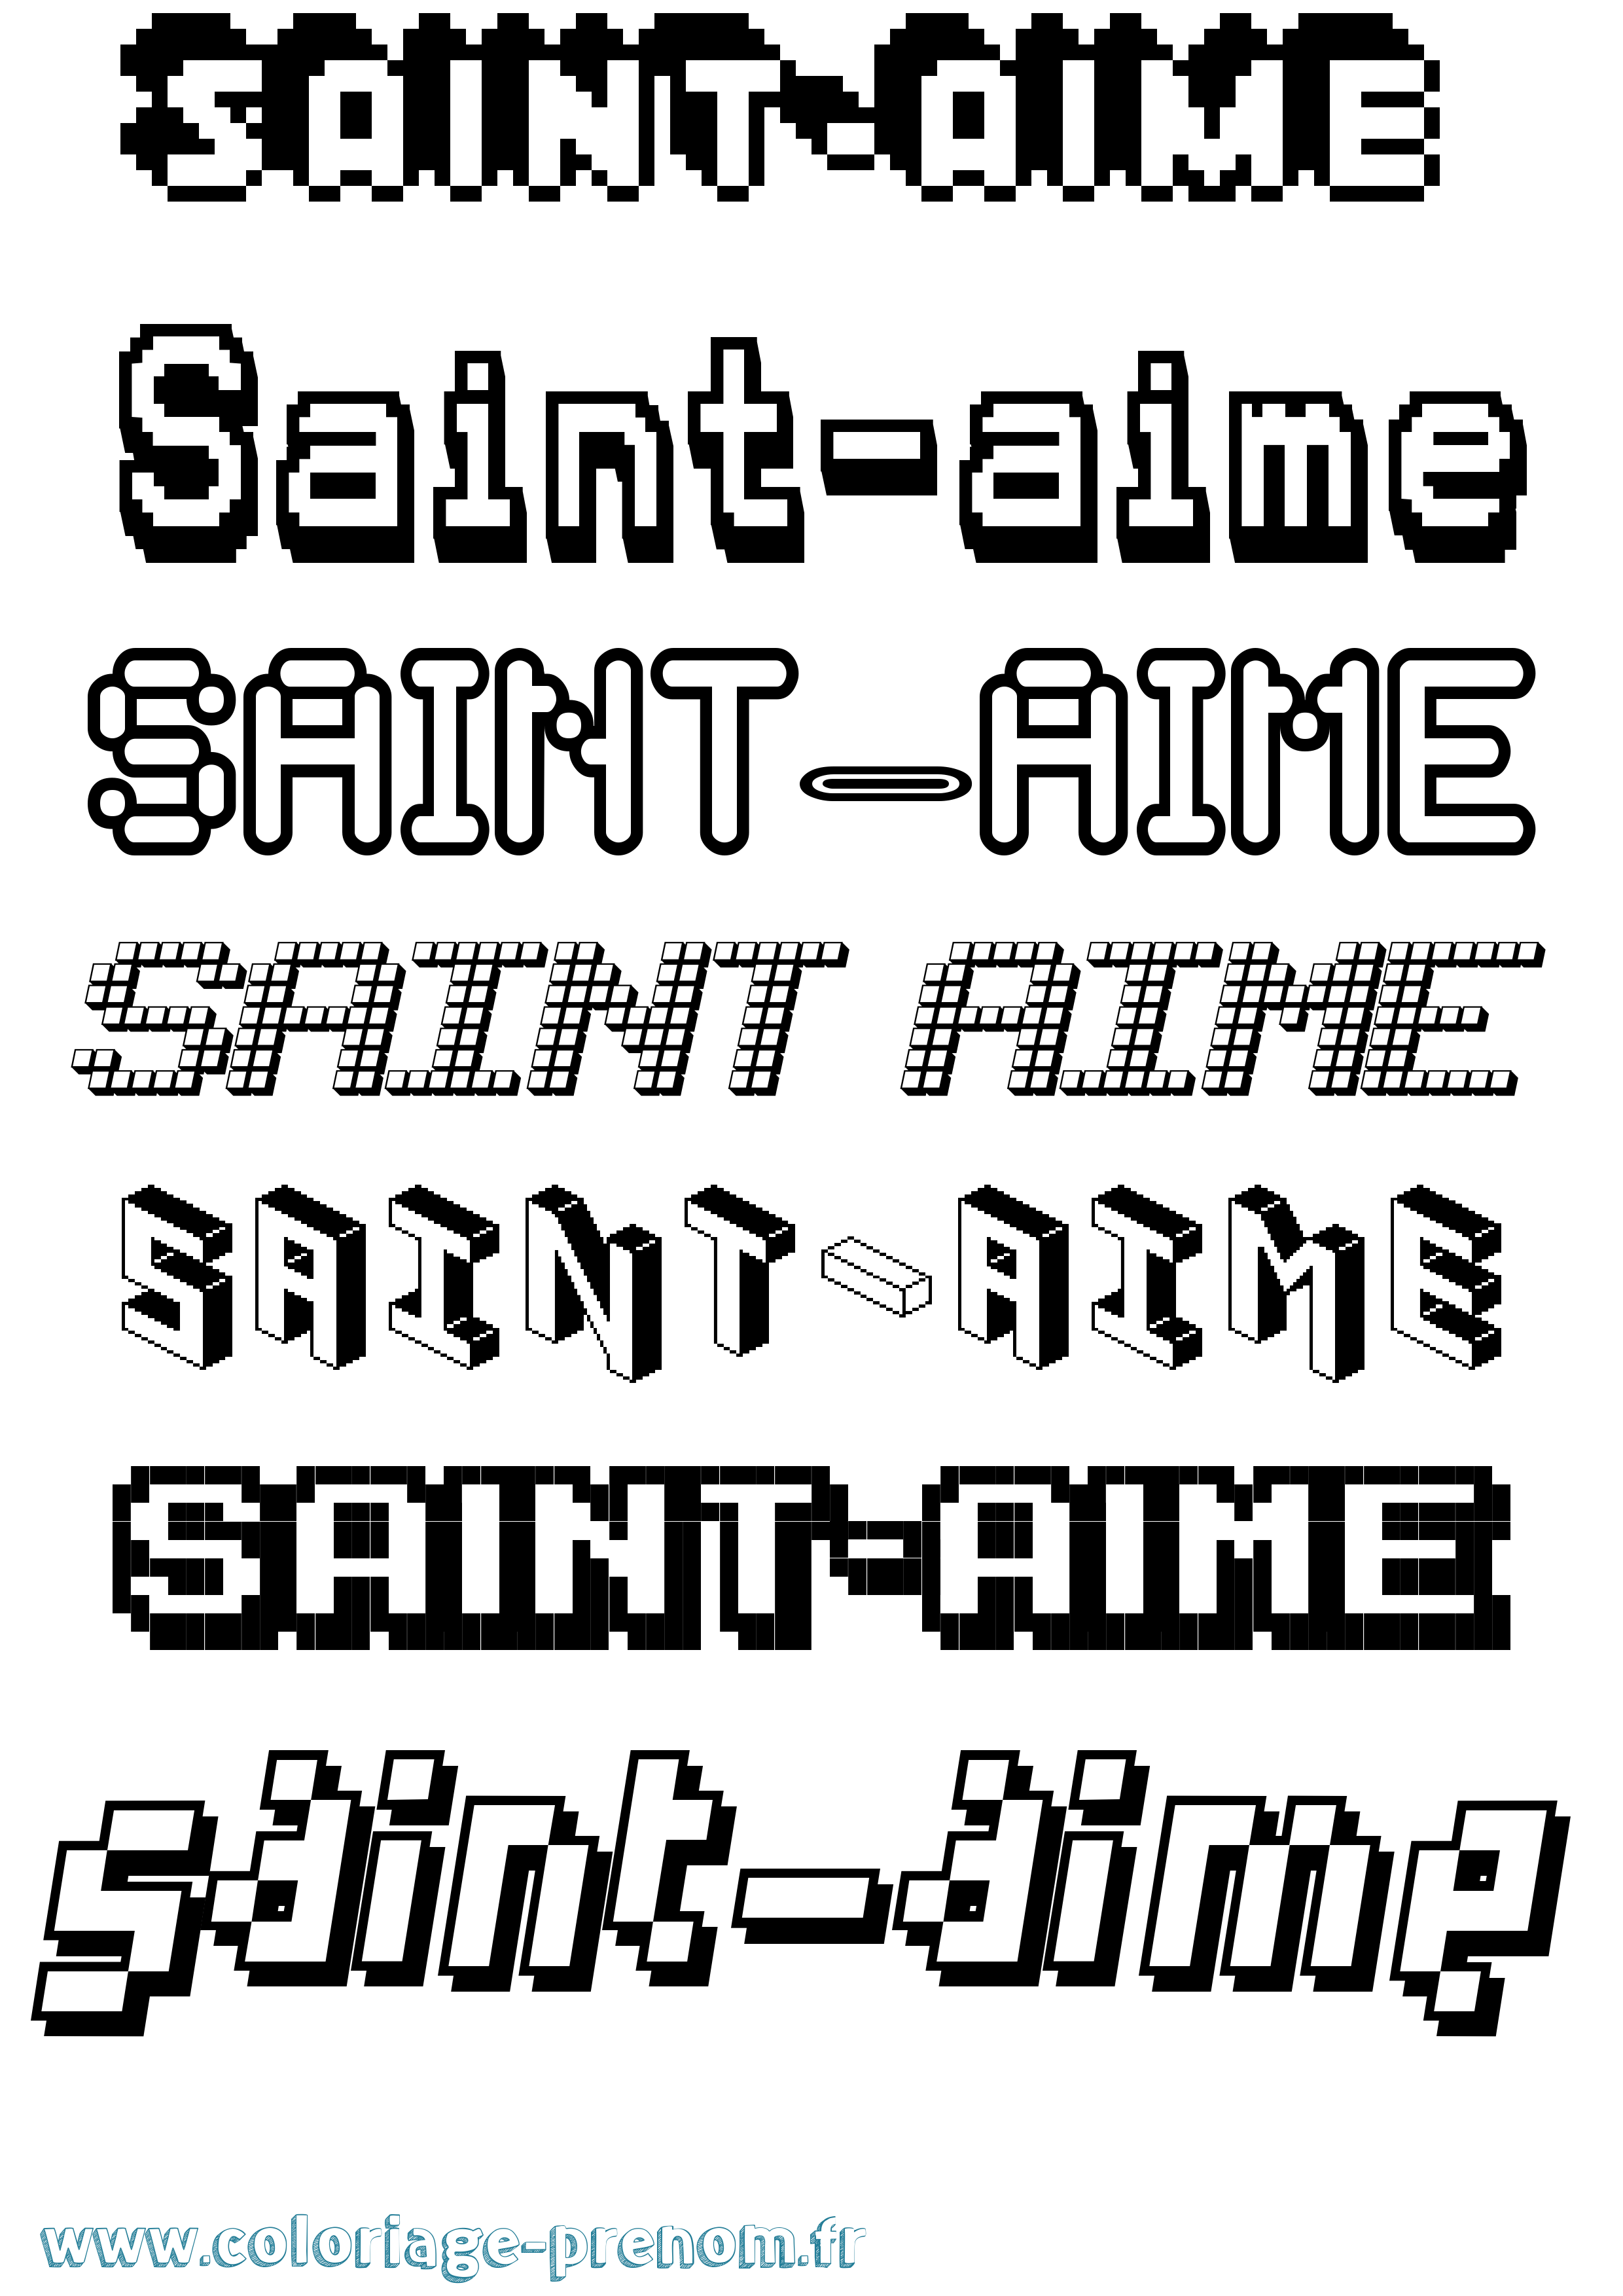 Coloriage prénom Saint-Aime Pixel